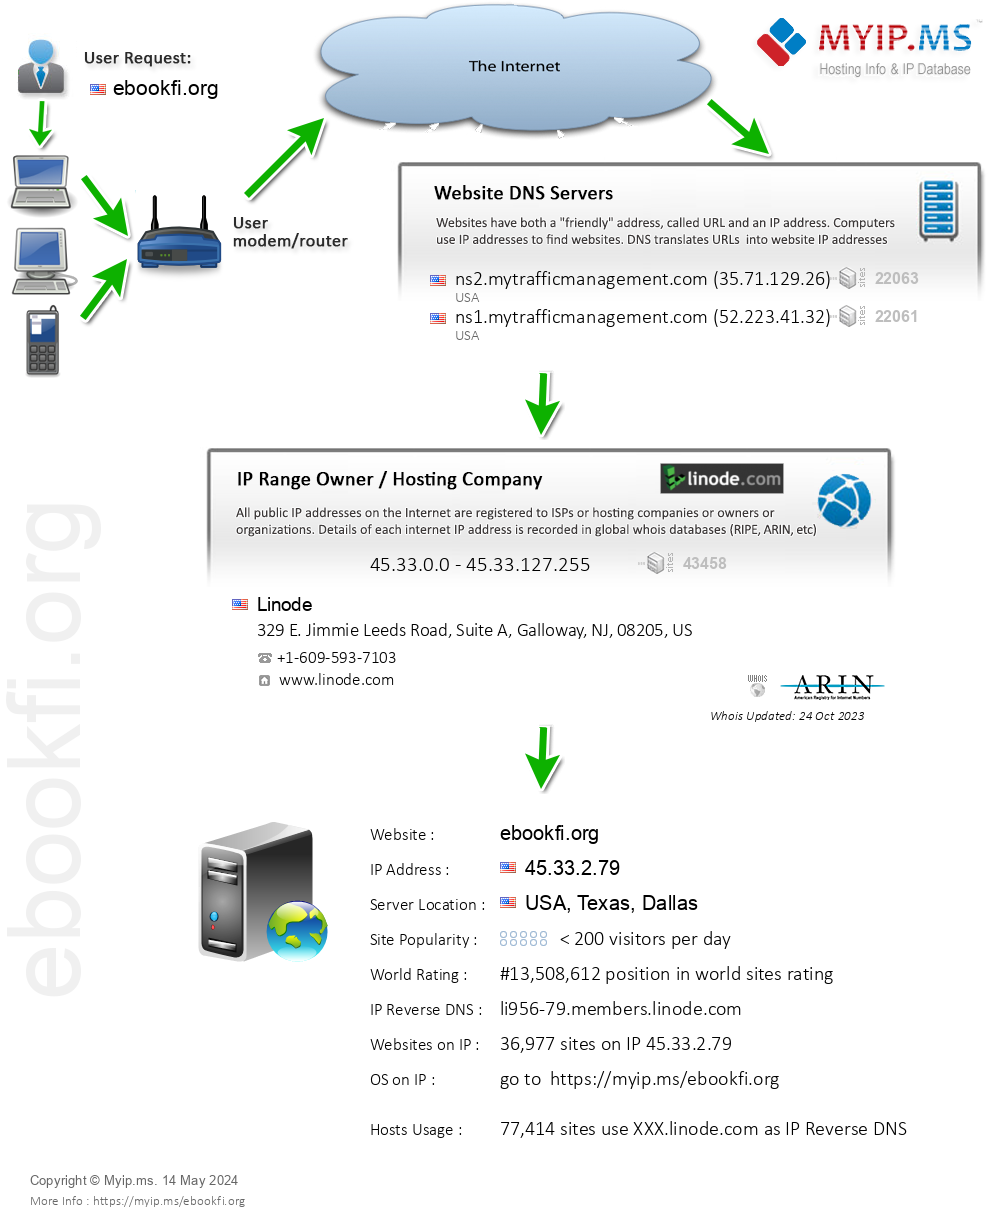 Ebookfi.org - Website Hosting Visual IP Diagram